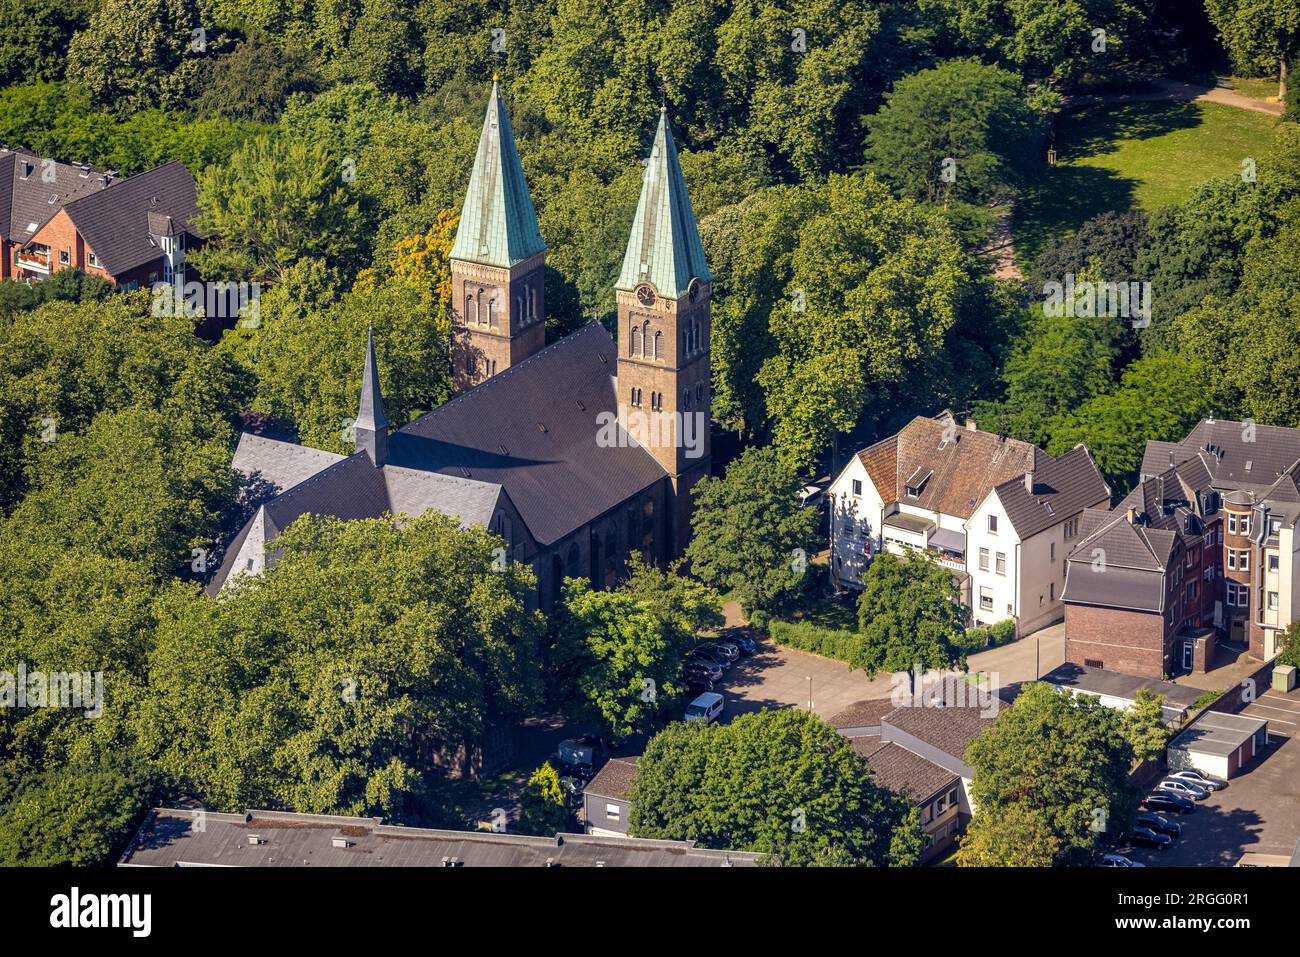 Luftbild, Kath. Kirche Herz Jesu, Neumühl, Duisburg, Ruhrgebiet, Nordrhein-Westfalen, Deutschland Stock Photo